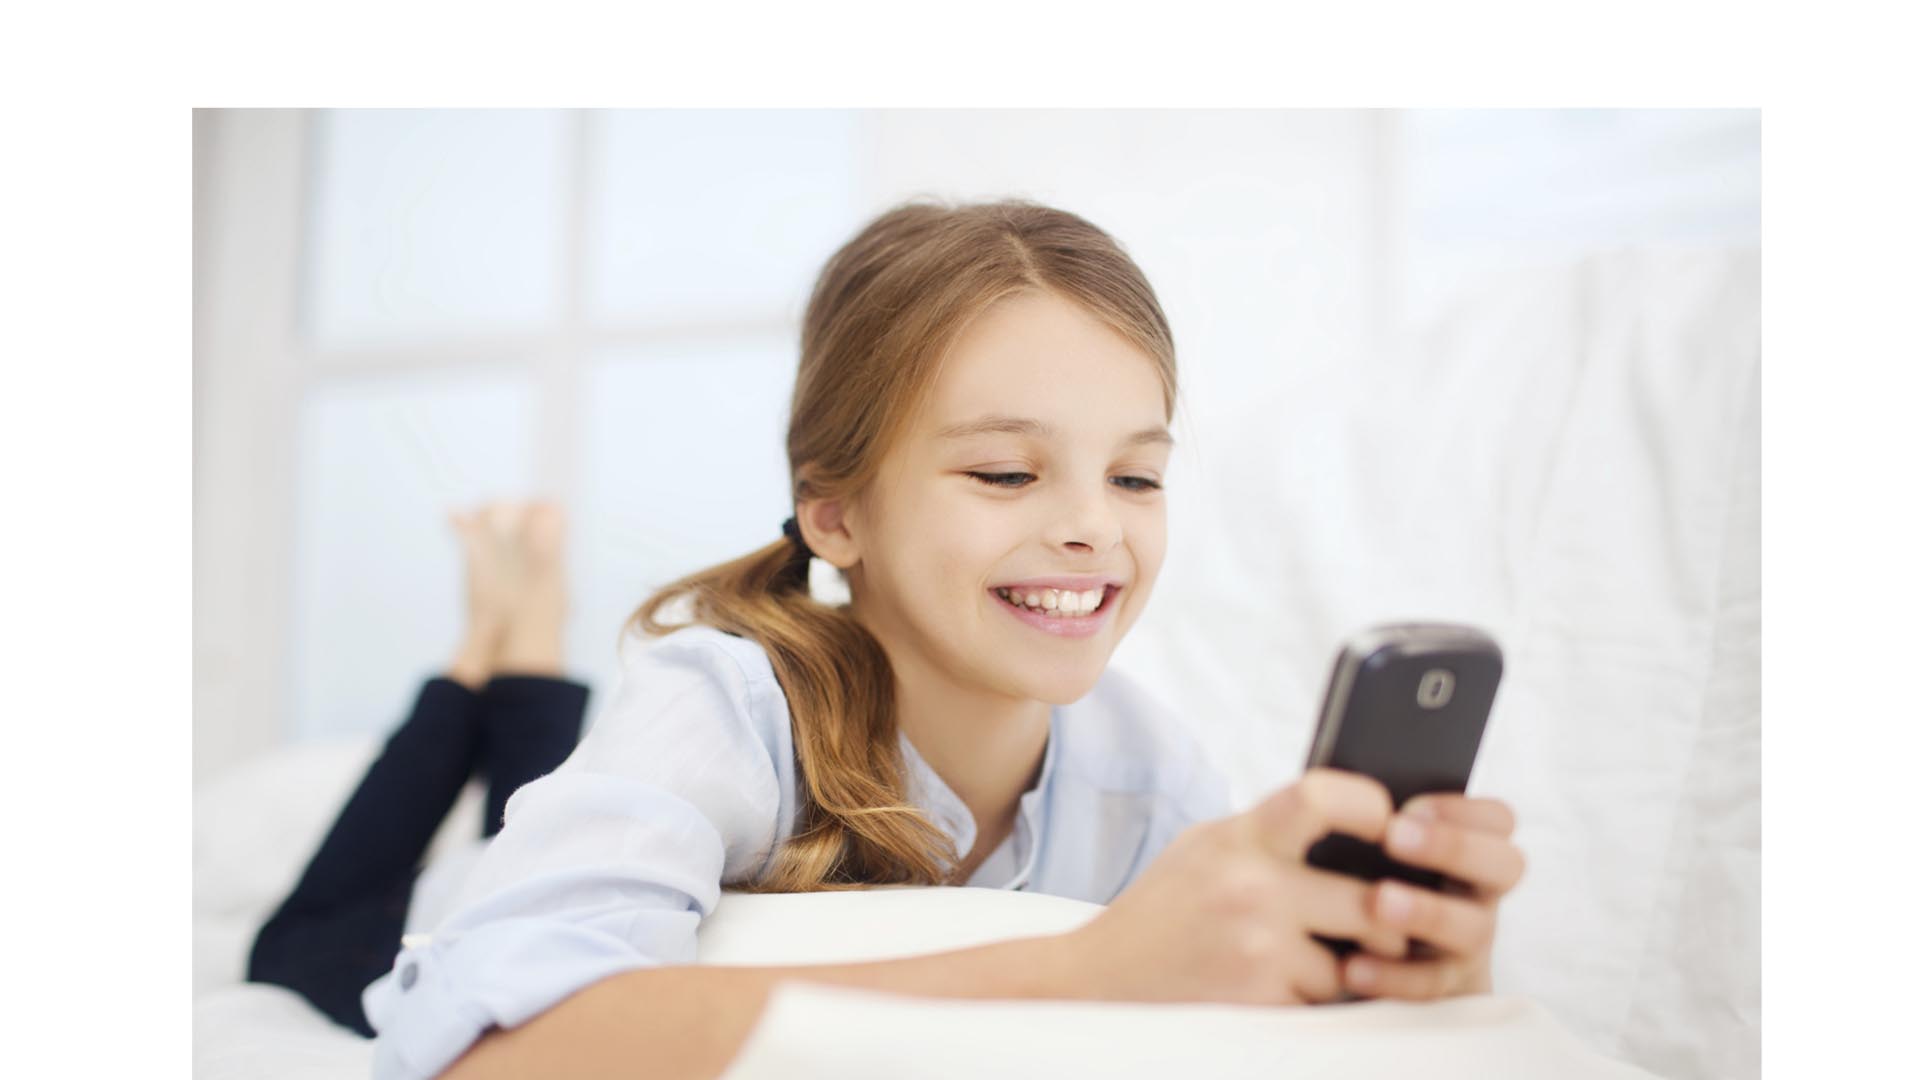 Los móviles y tabletas son fundamentales en el aprendizaje de los niños si se utilizan de manera correcta